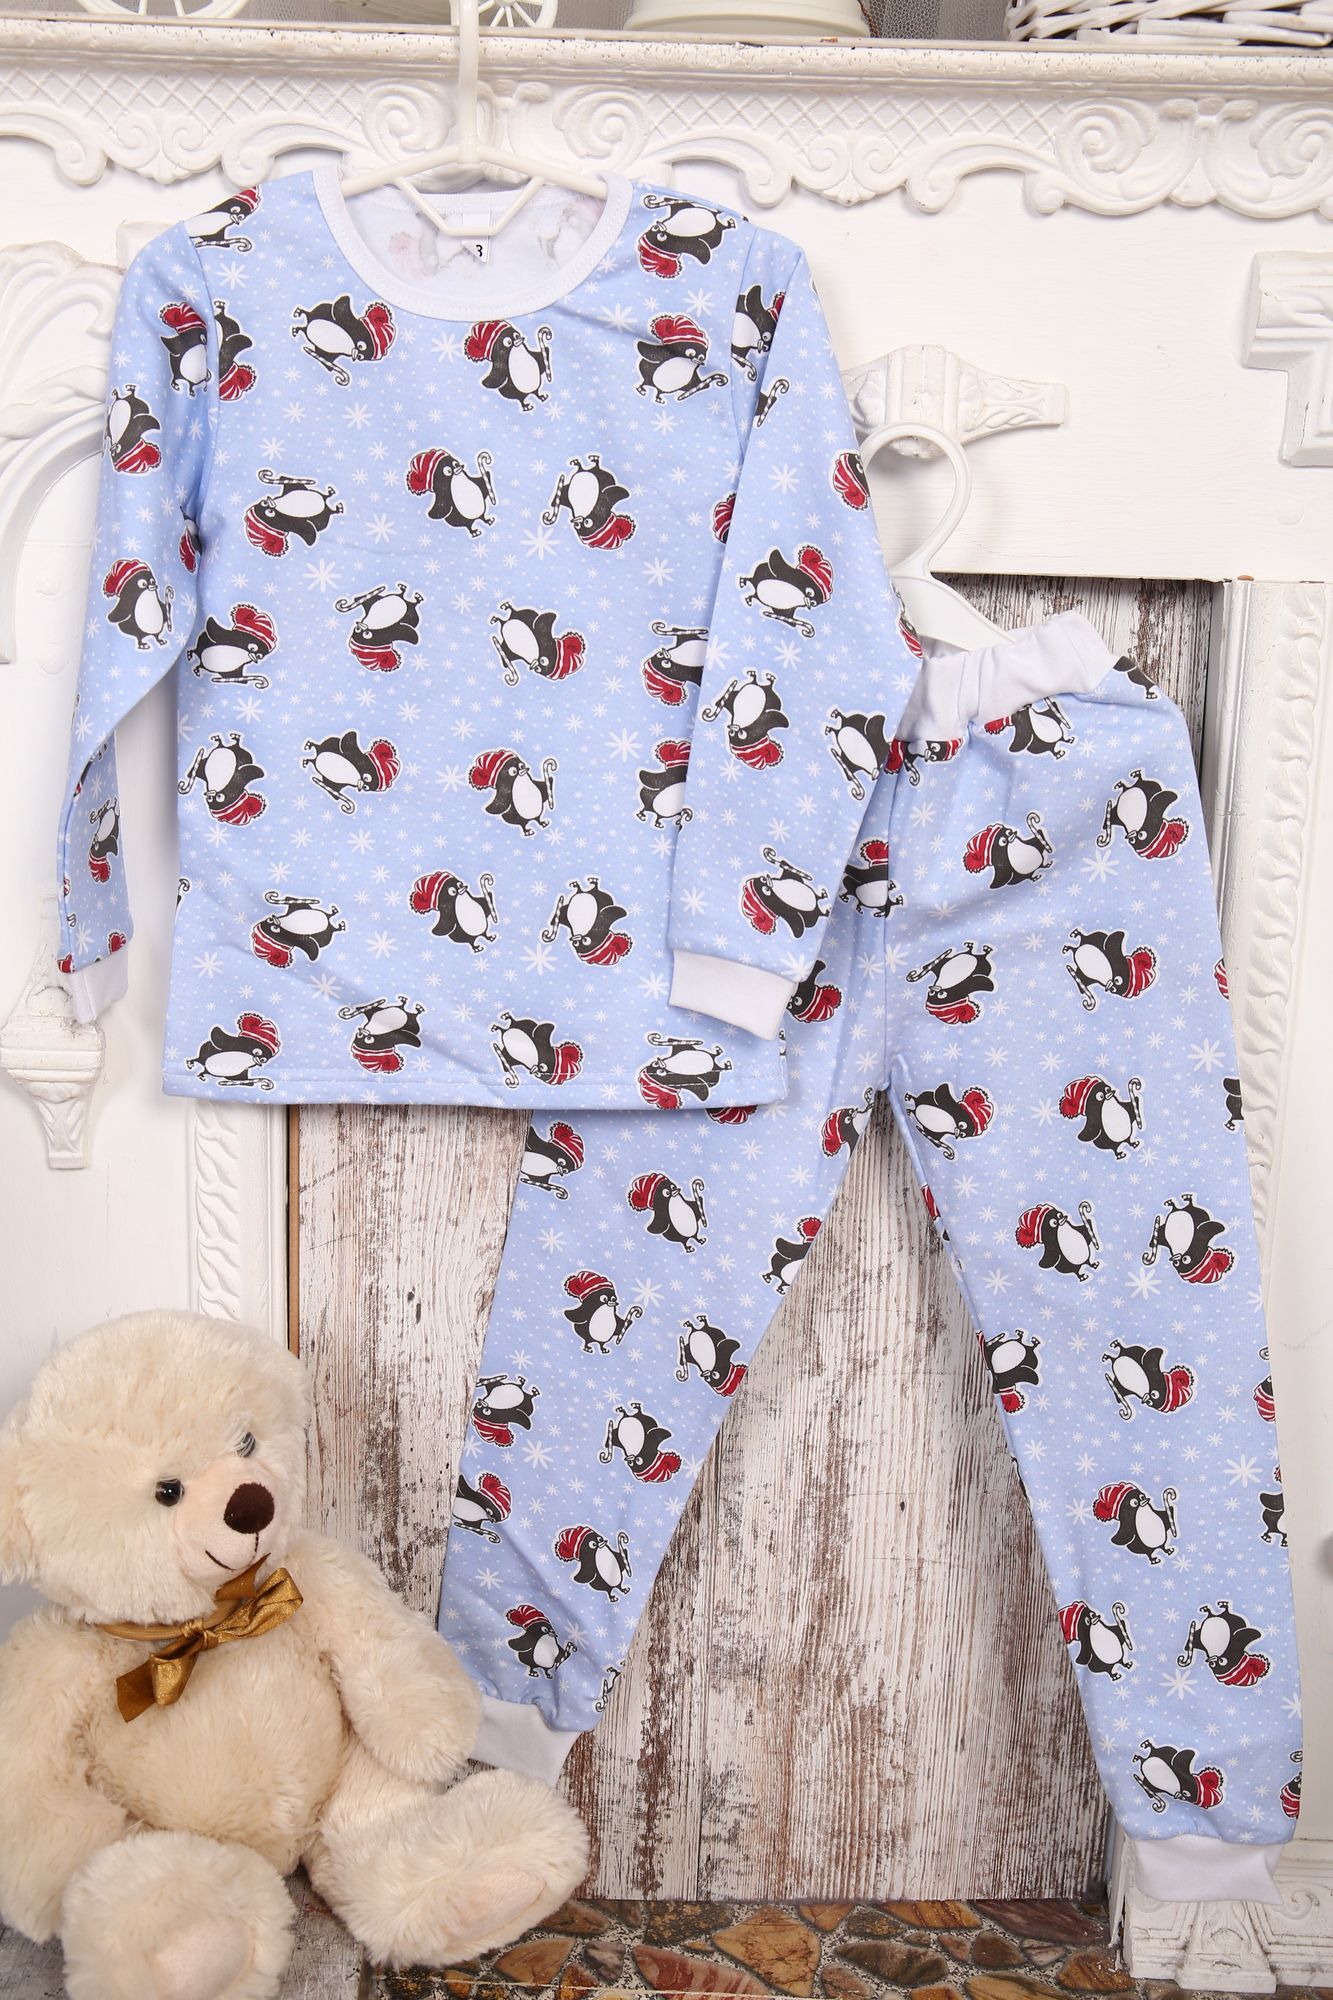 Пижама детская теплая, модель 316, трикотаж 26 размер, Веселые пингвины